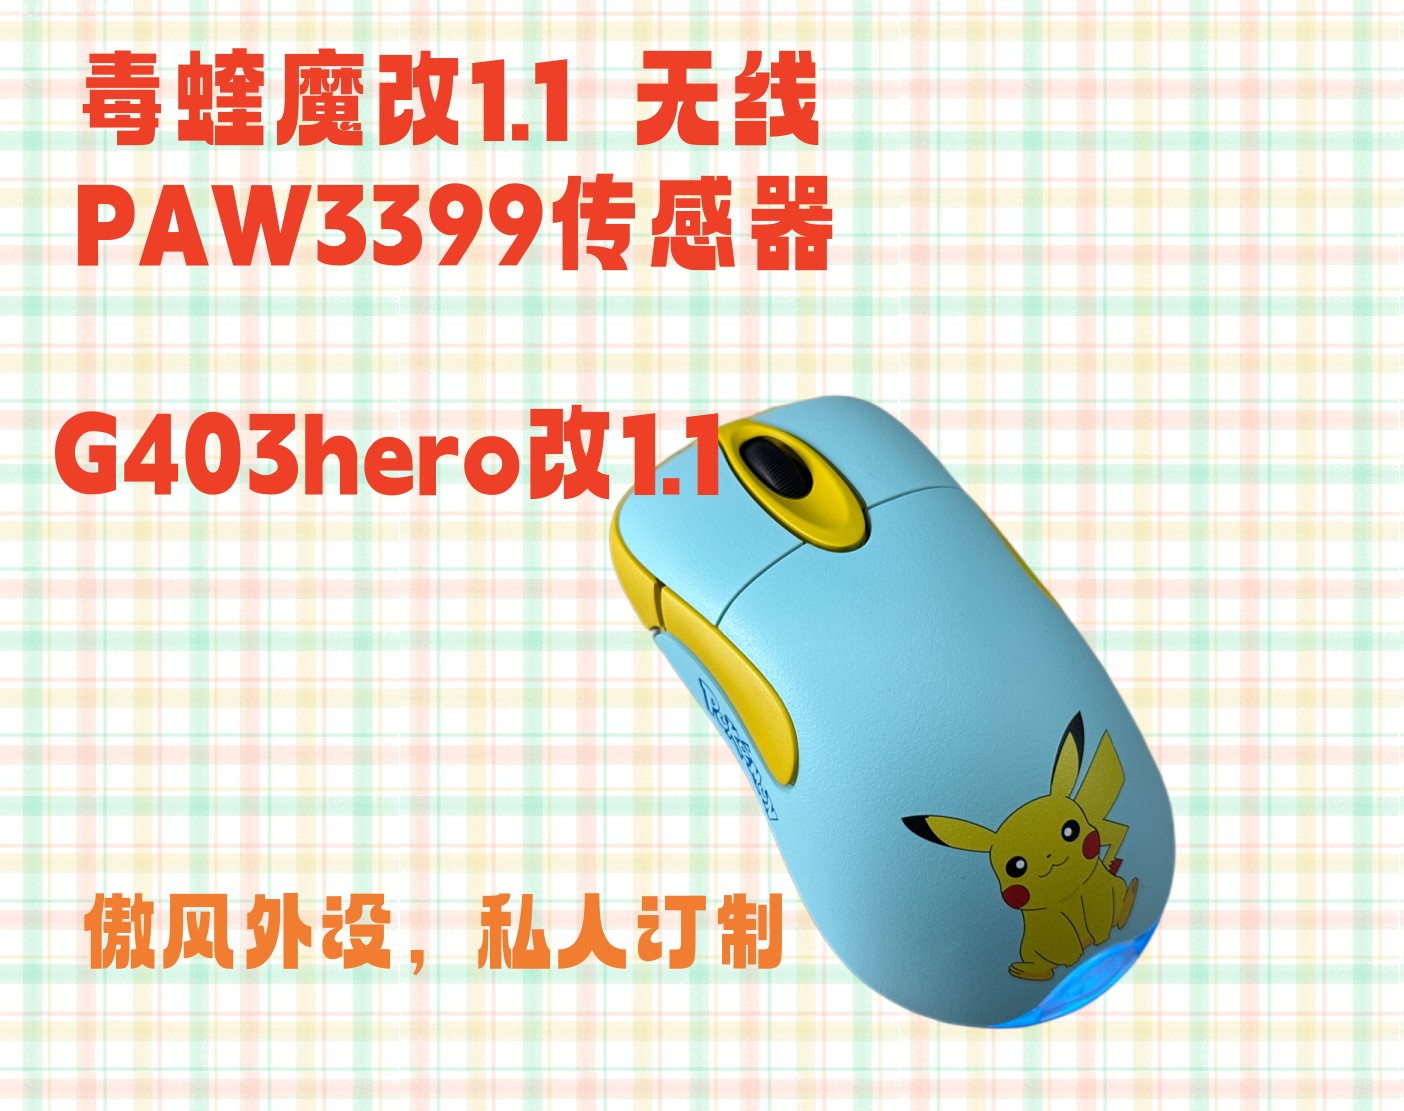 傲风外设io1.1 3395 PRO 新款炫彩精调微动侧键无线电竞双模鼠标-Taobao